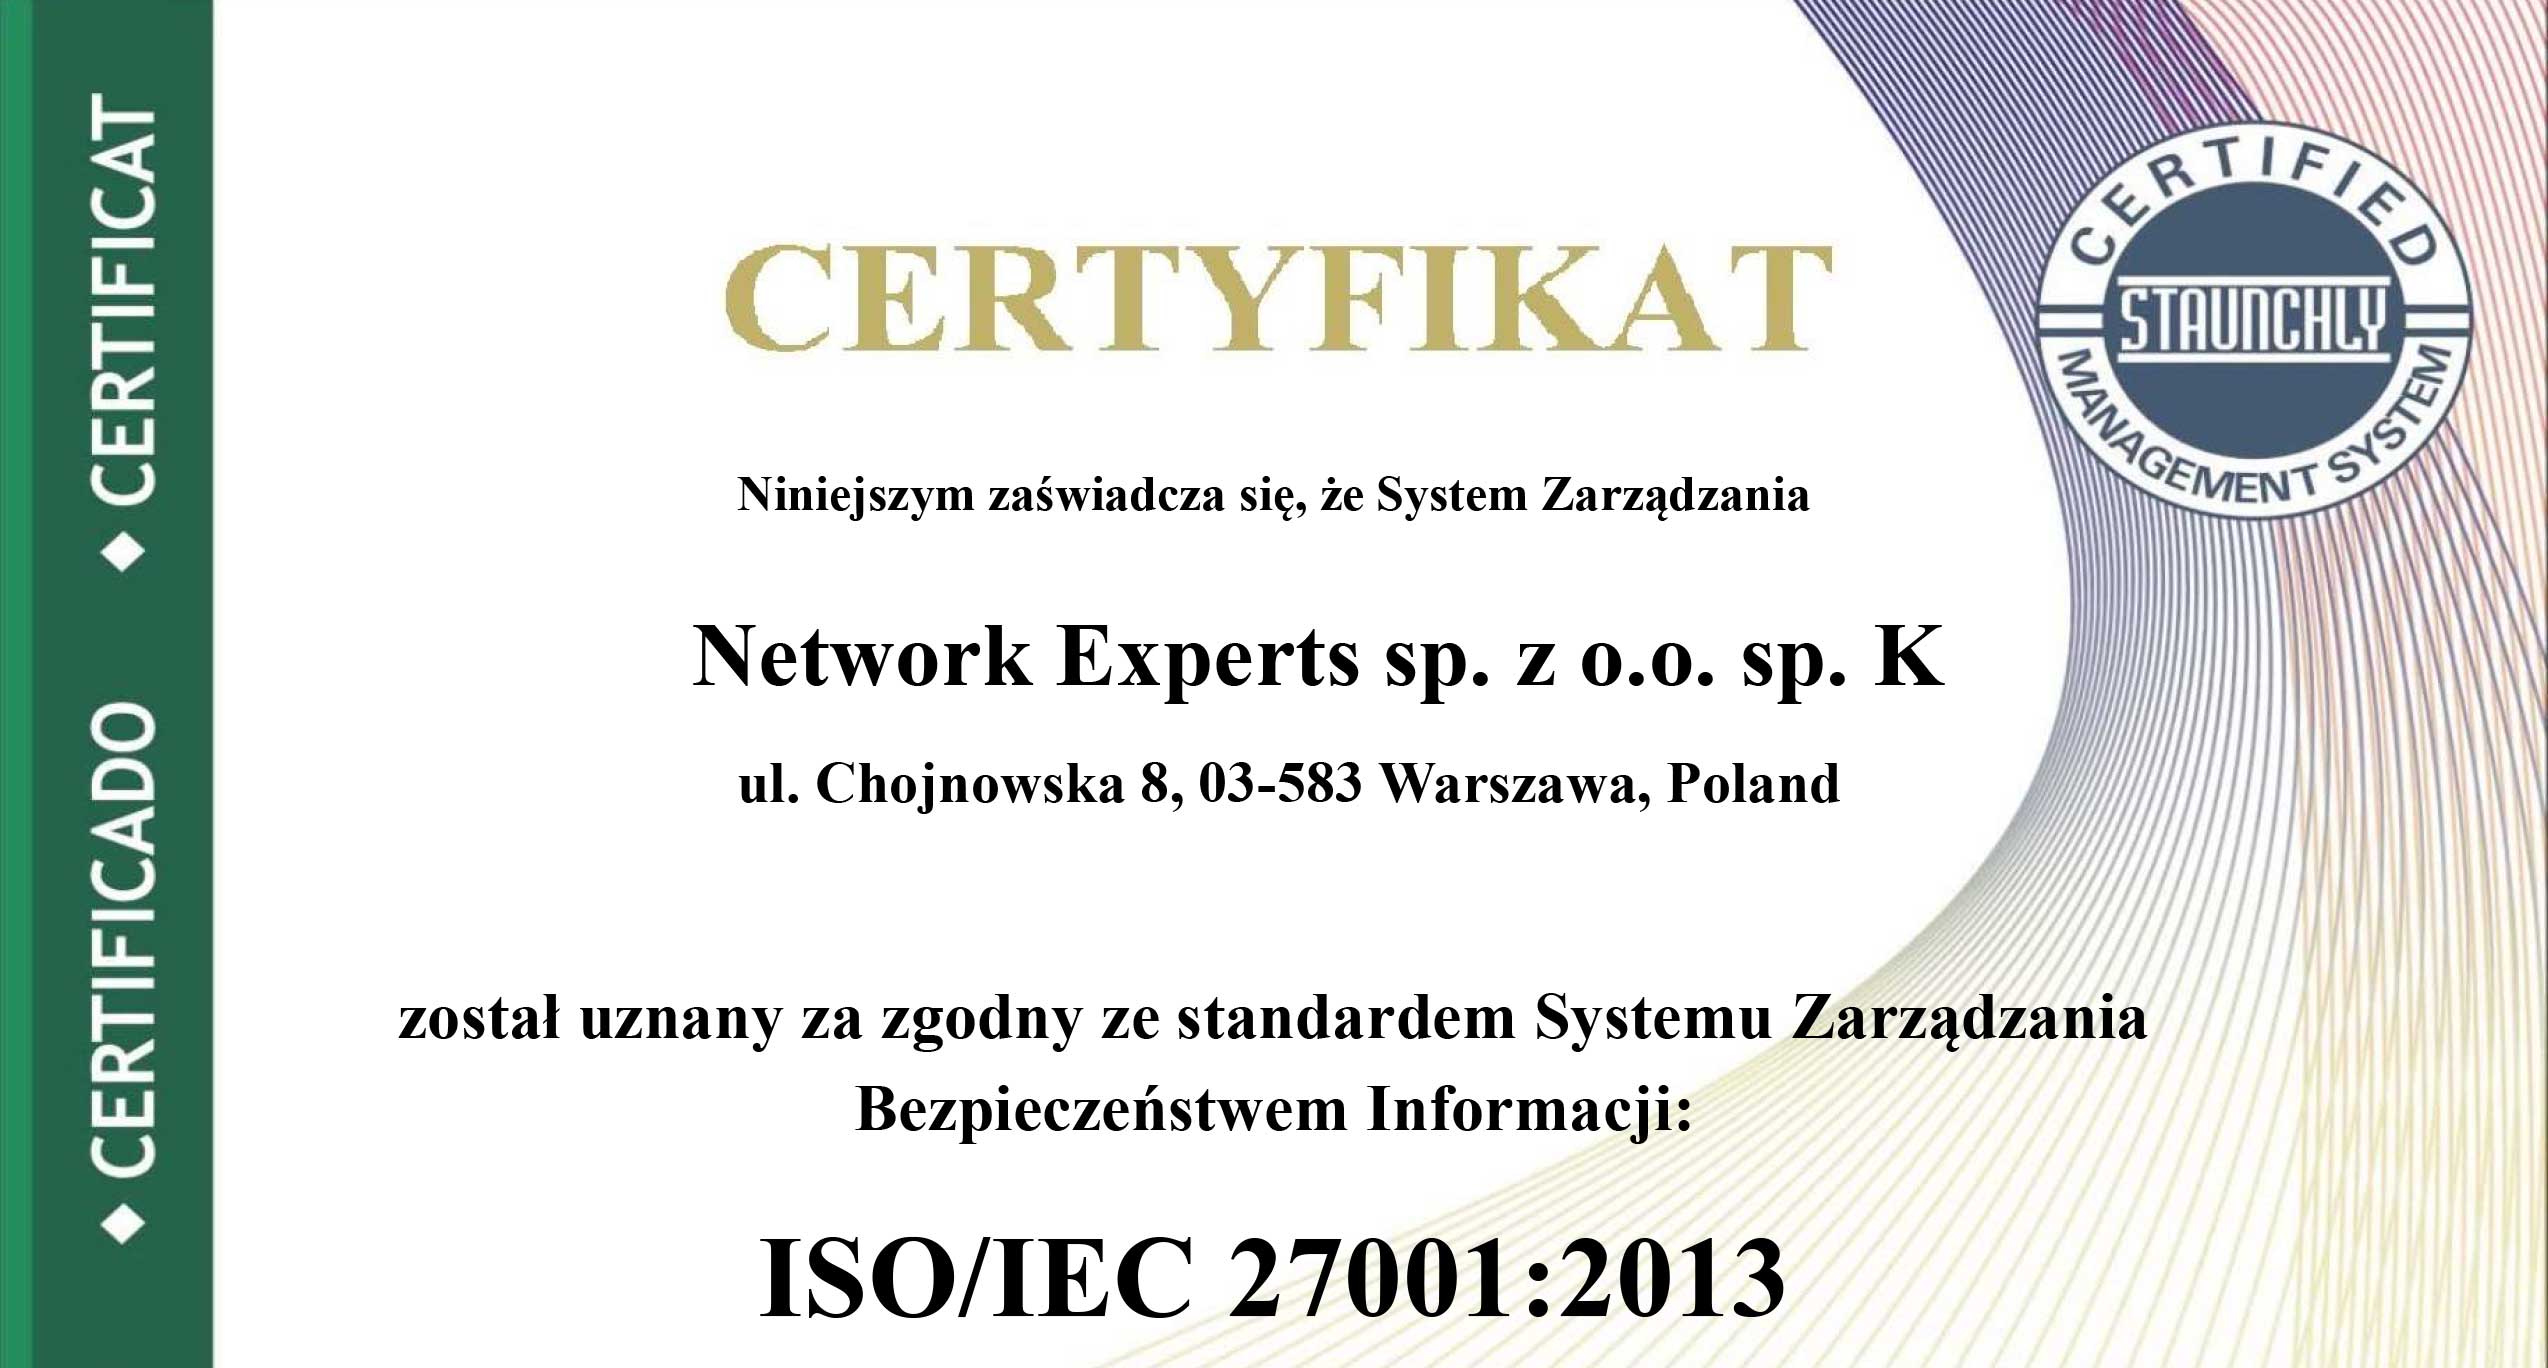 Uzyskaliśmy certyfikację ISO 27001